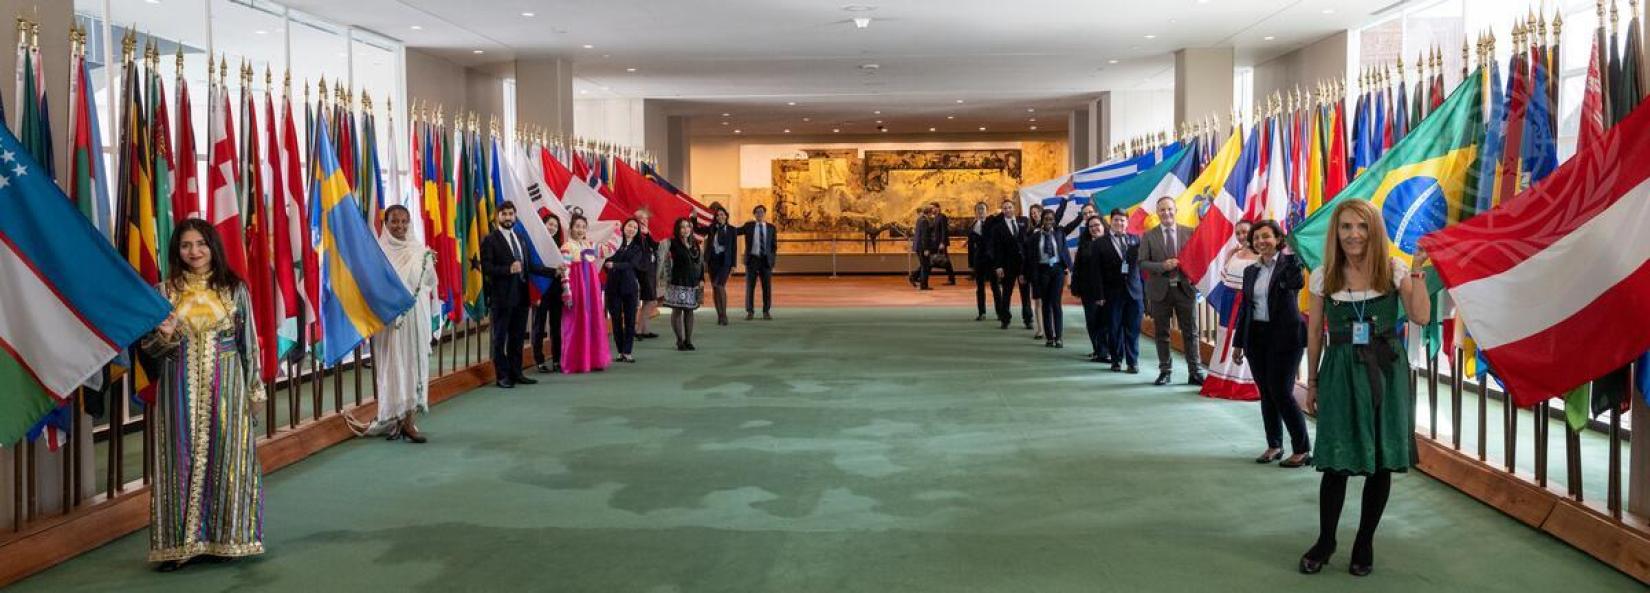 Guias da ONU posam para uma foto com suas respectivas bandeiras por ocasião do aniversário das Visitas Guiadas das Nações Unidas. 